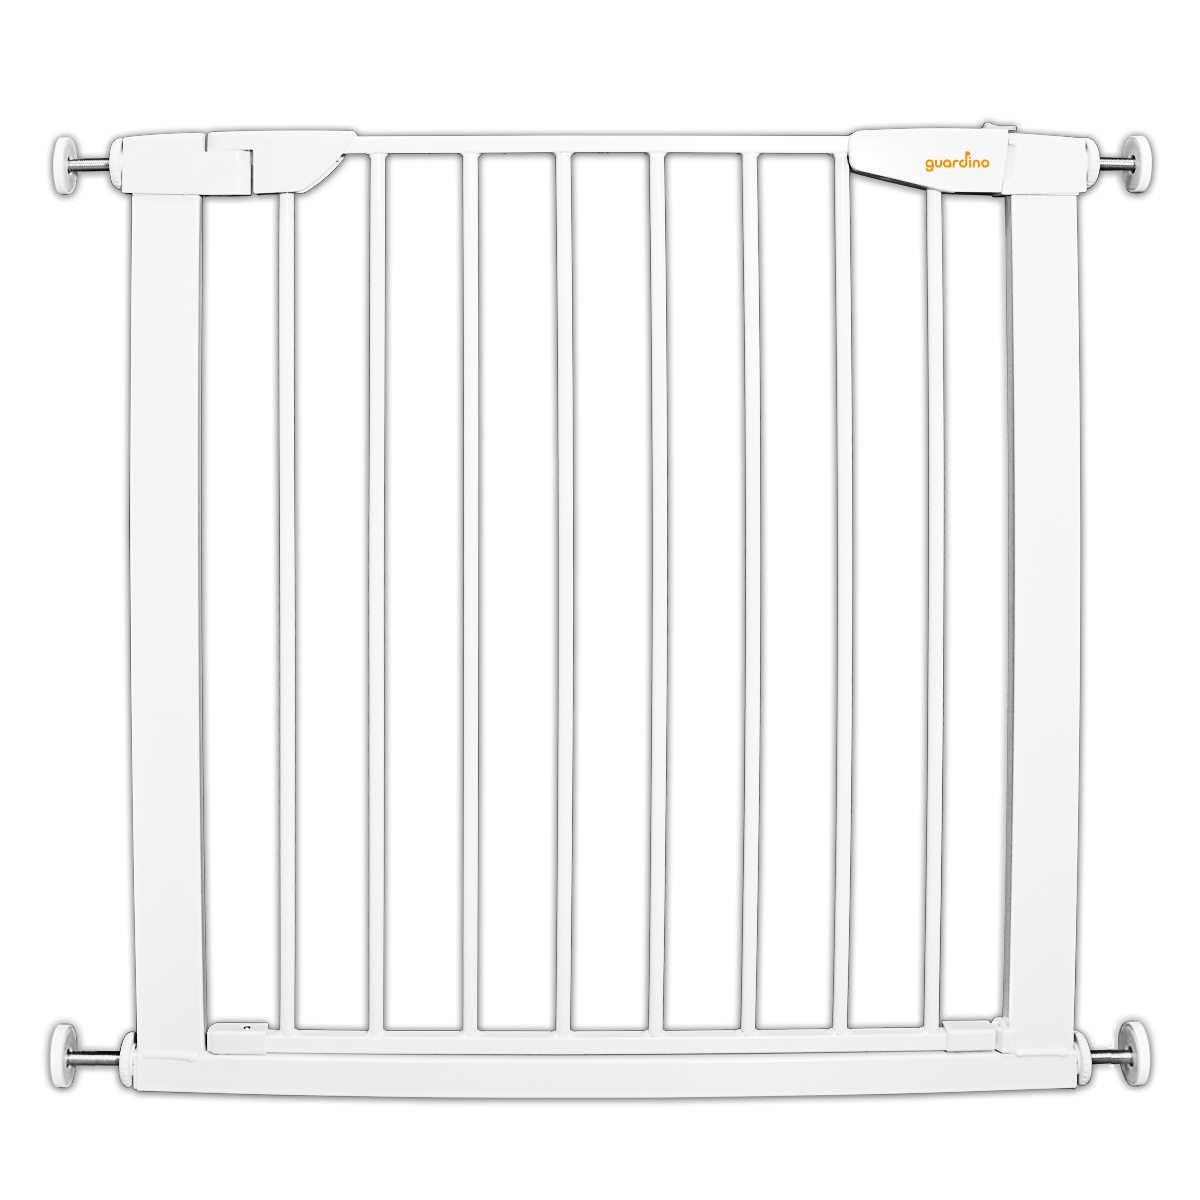 Guardino Türschutzgitter 75-81 cm, erweiterbar bis 109 cm - Treppenschutzgitter ohne Bohren